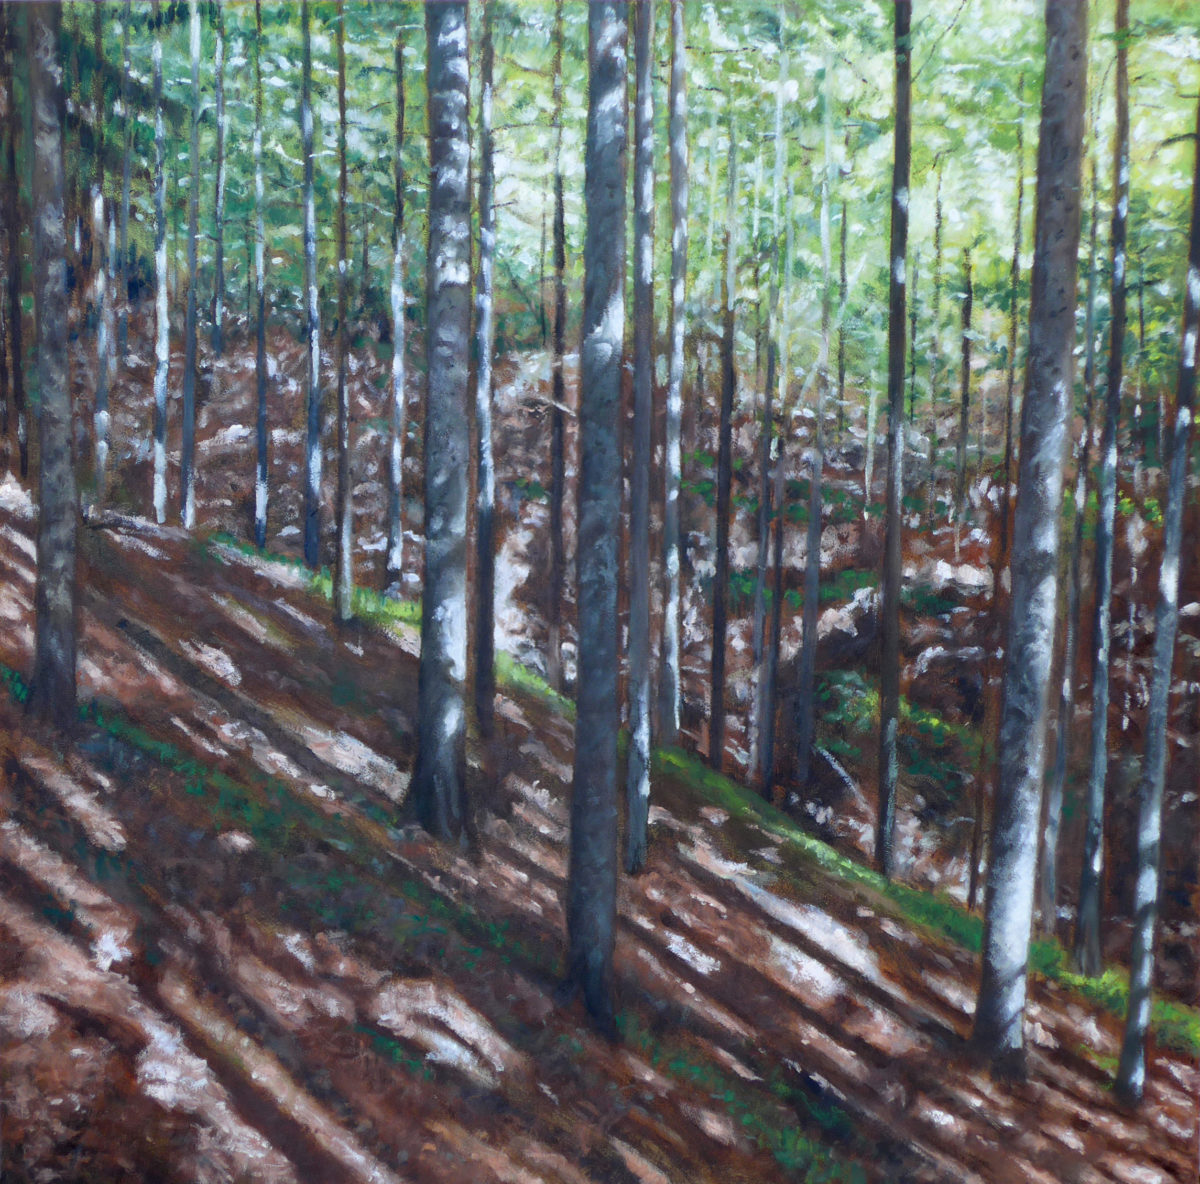 BOURQUIN Pascal, La foresta XV, 2016, Huile sur panneau, 74 x 73 cm